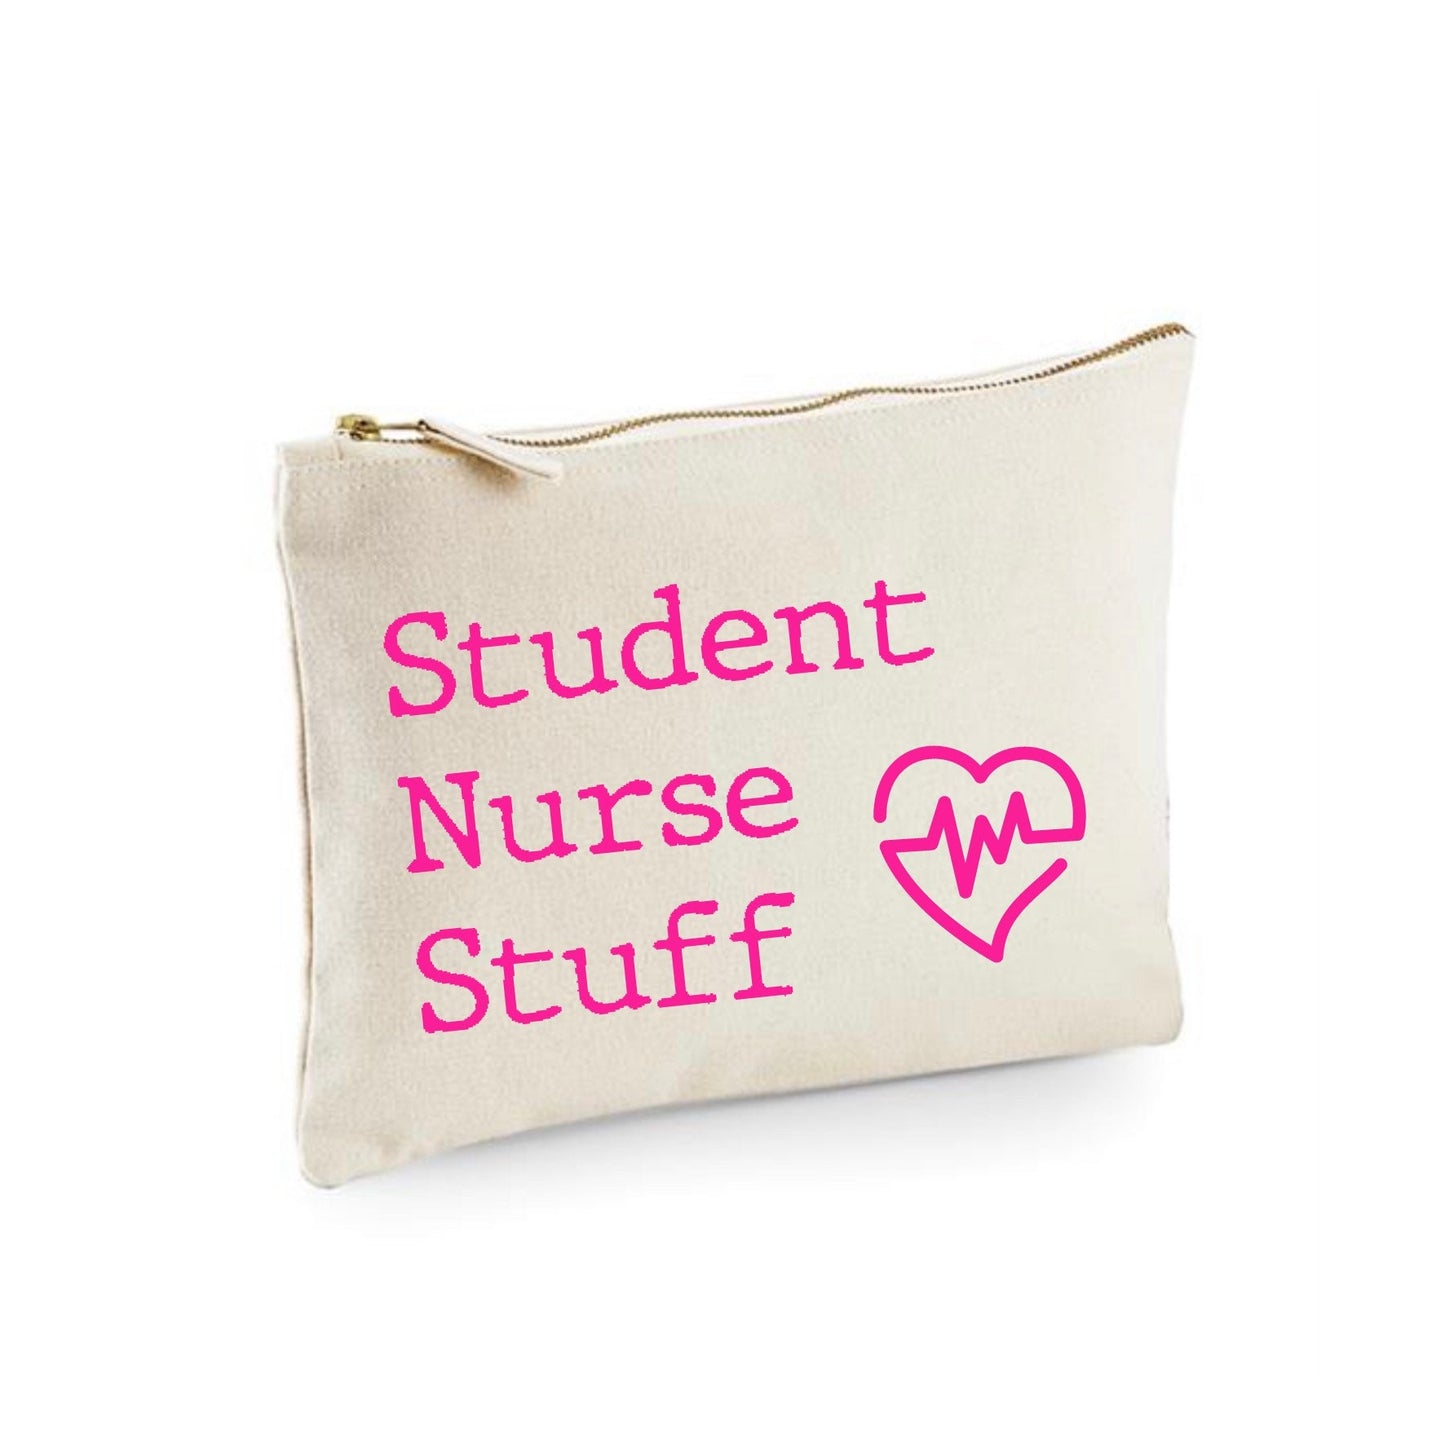 Student Nurse stuff pouch, university student nurse gift, good luck on nursing degree gift, trainee nurse on placement